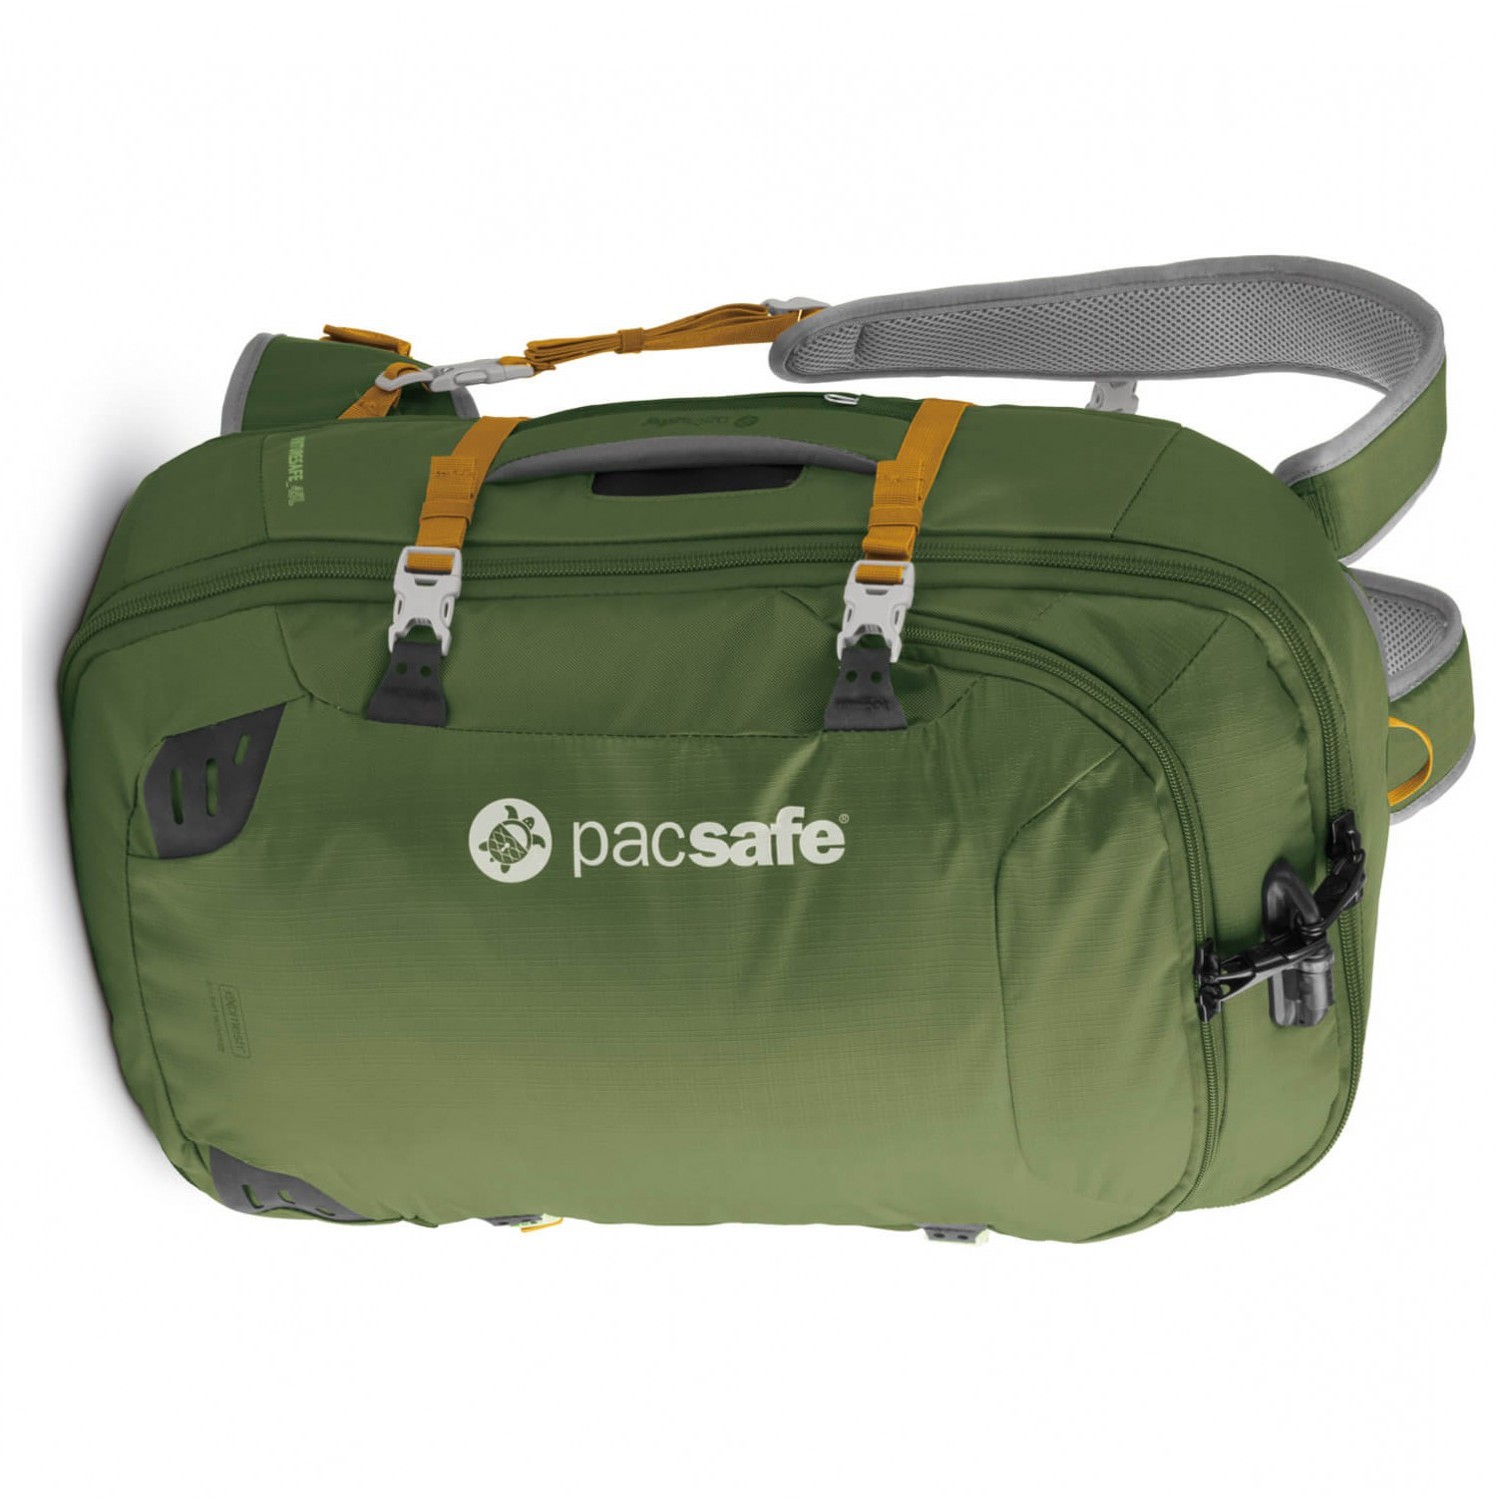 pacsafe-venturesafe-45l-gii-travel-backpack